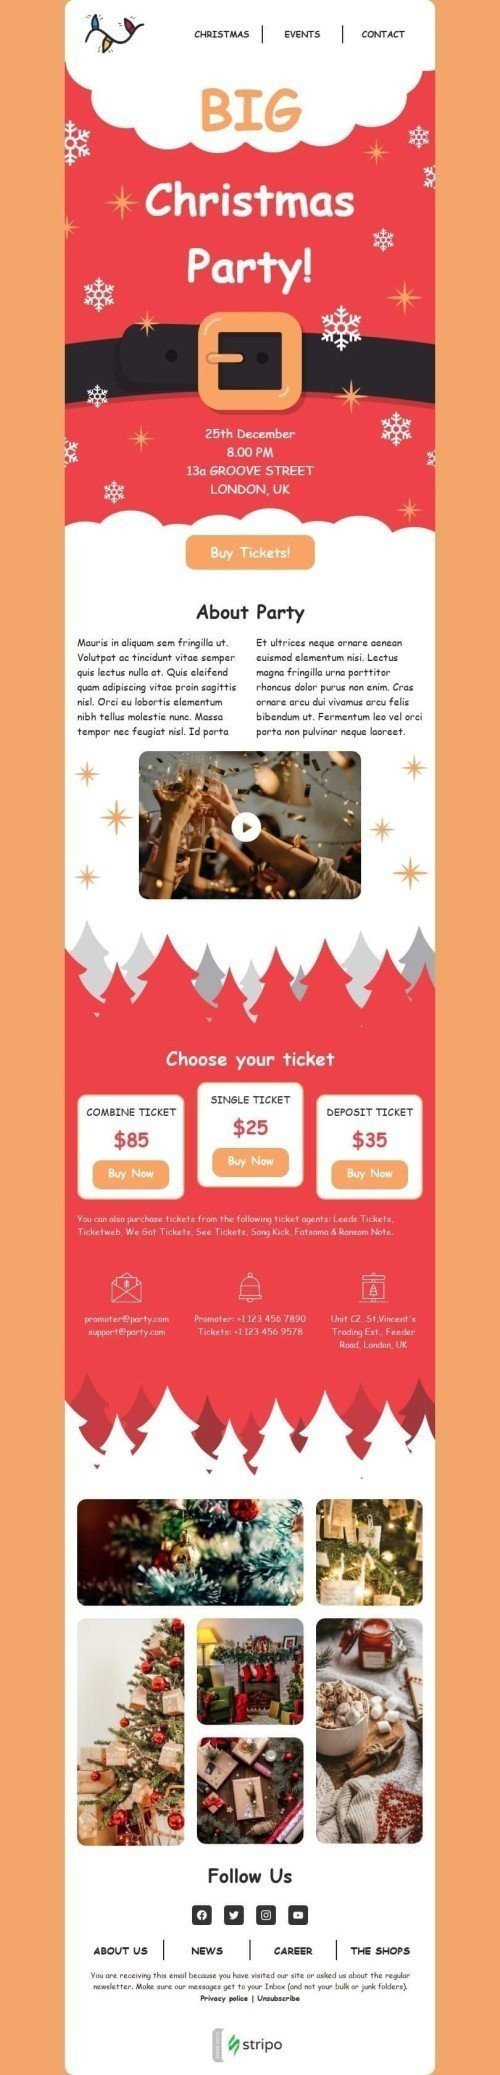 Plantilla de correo electrónico «Gran fiesta de navidad» de Navidad para la industria de Eventos mobile view